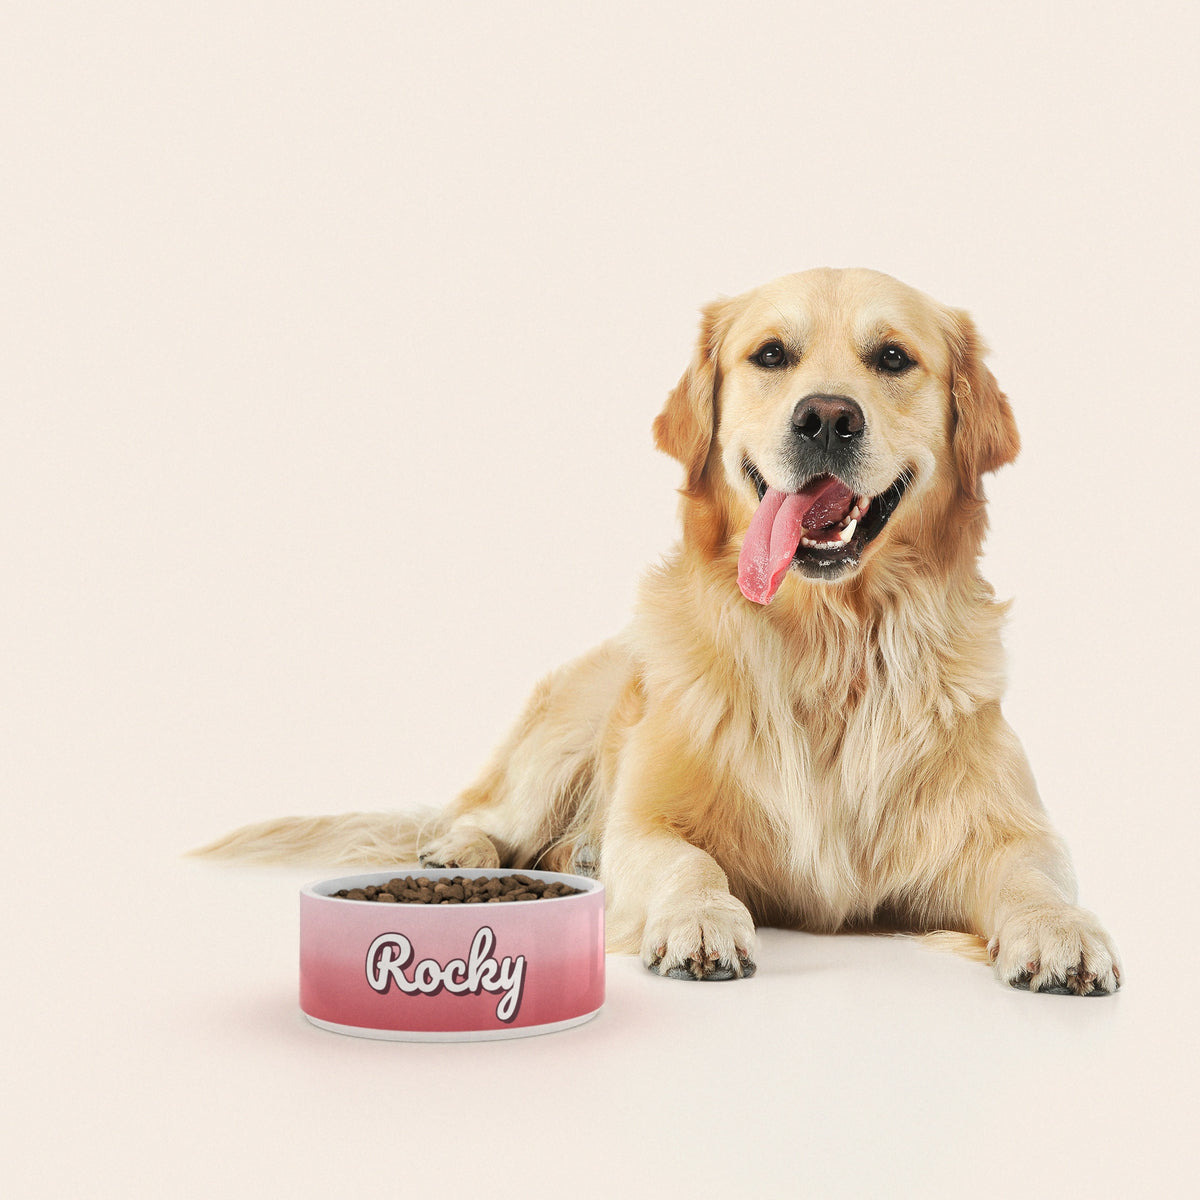 Un golden retriever assis à côté d'un bol pour chien au motif Duo Rose personnalisé avec le nom ROCKY